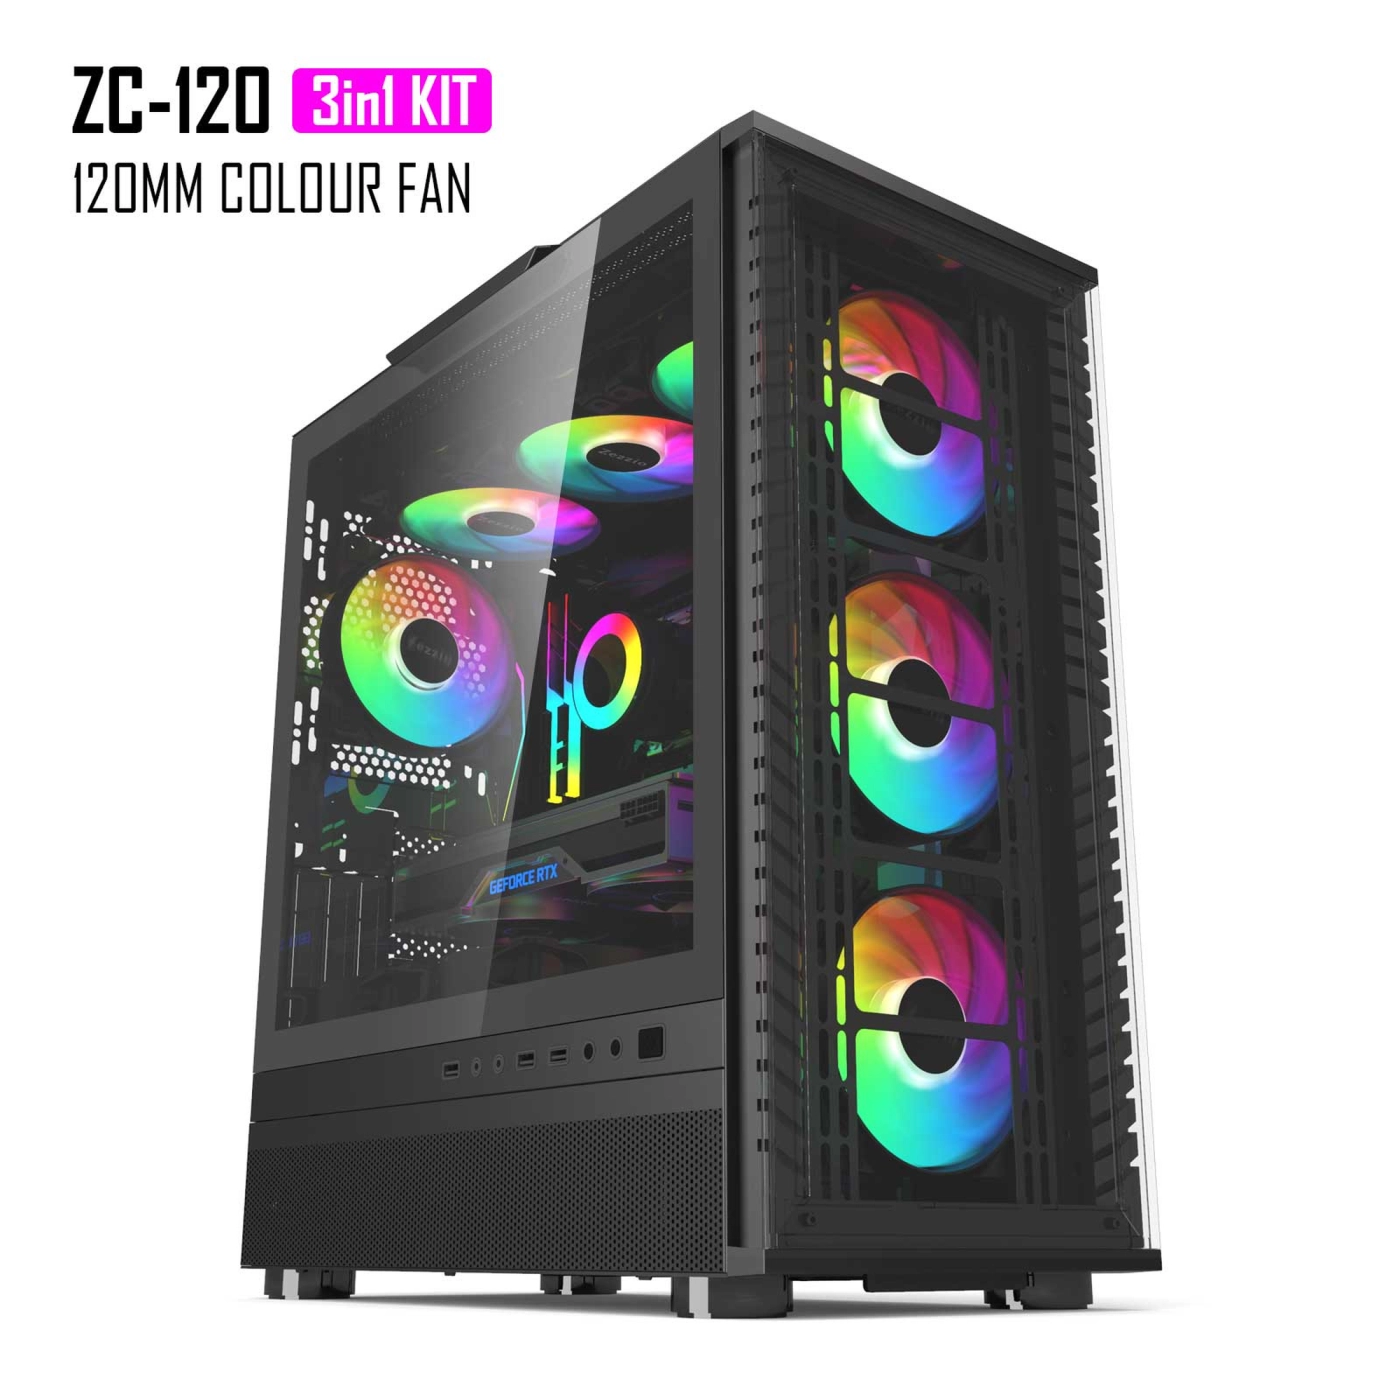 Купить Набор вентиляторов Zezzio ZC-120 SRGB 3 in 1 Kit - фото 8